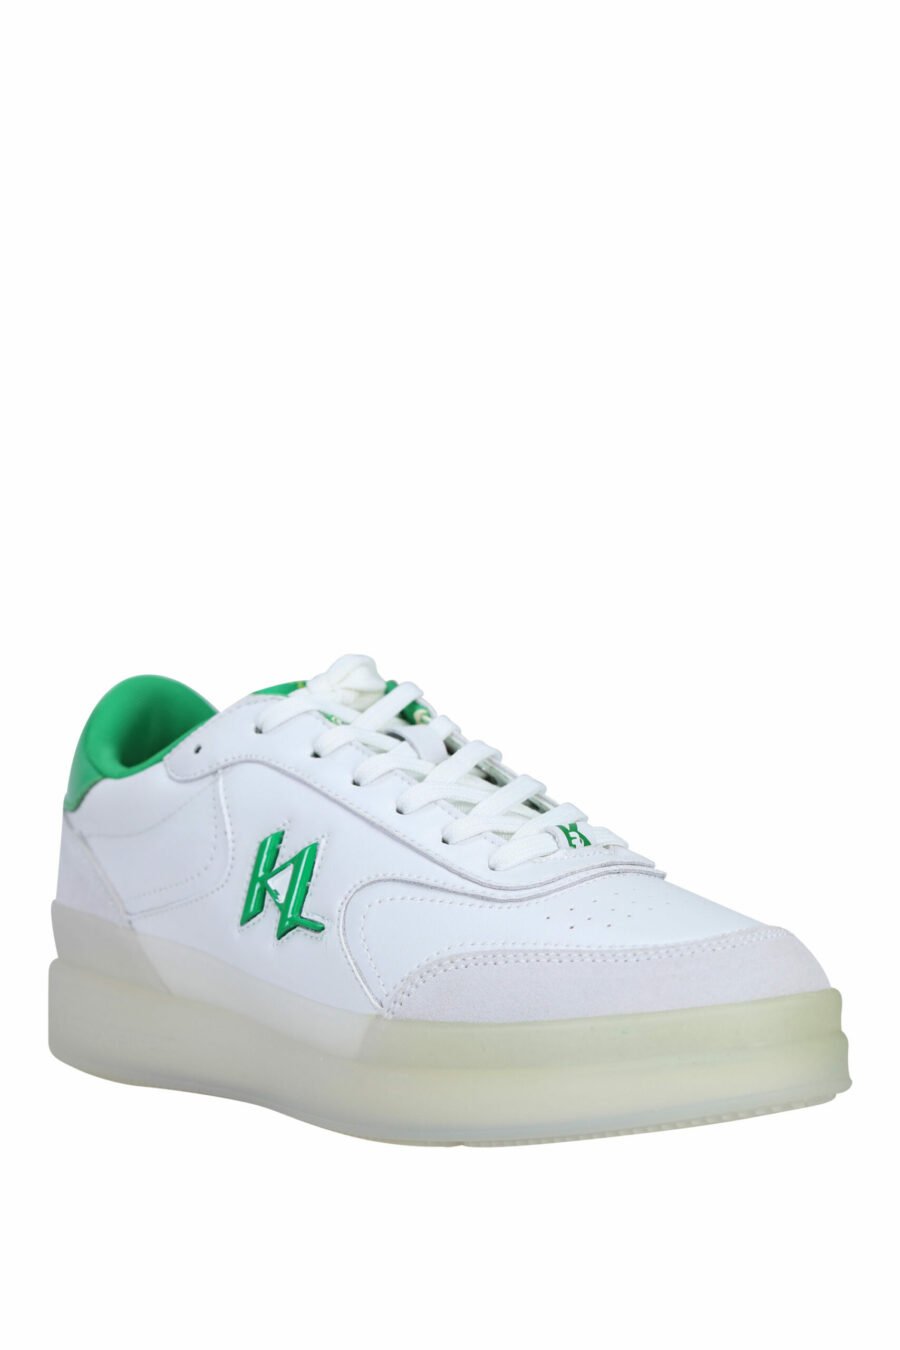 Zapatillas blancas y gris "brink" con detalles verdes - 5059529294495 1 scaled